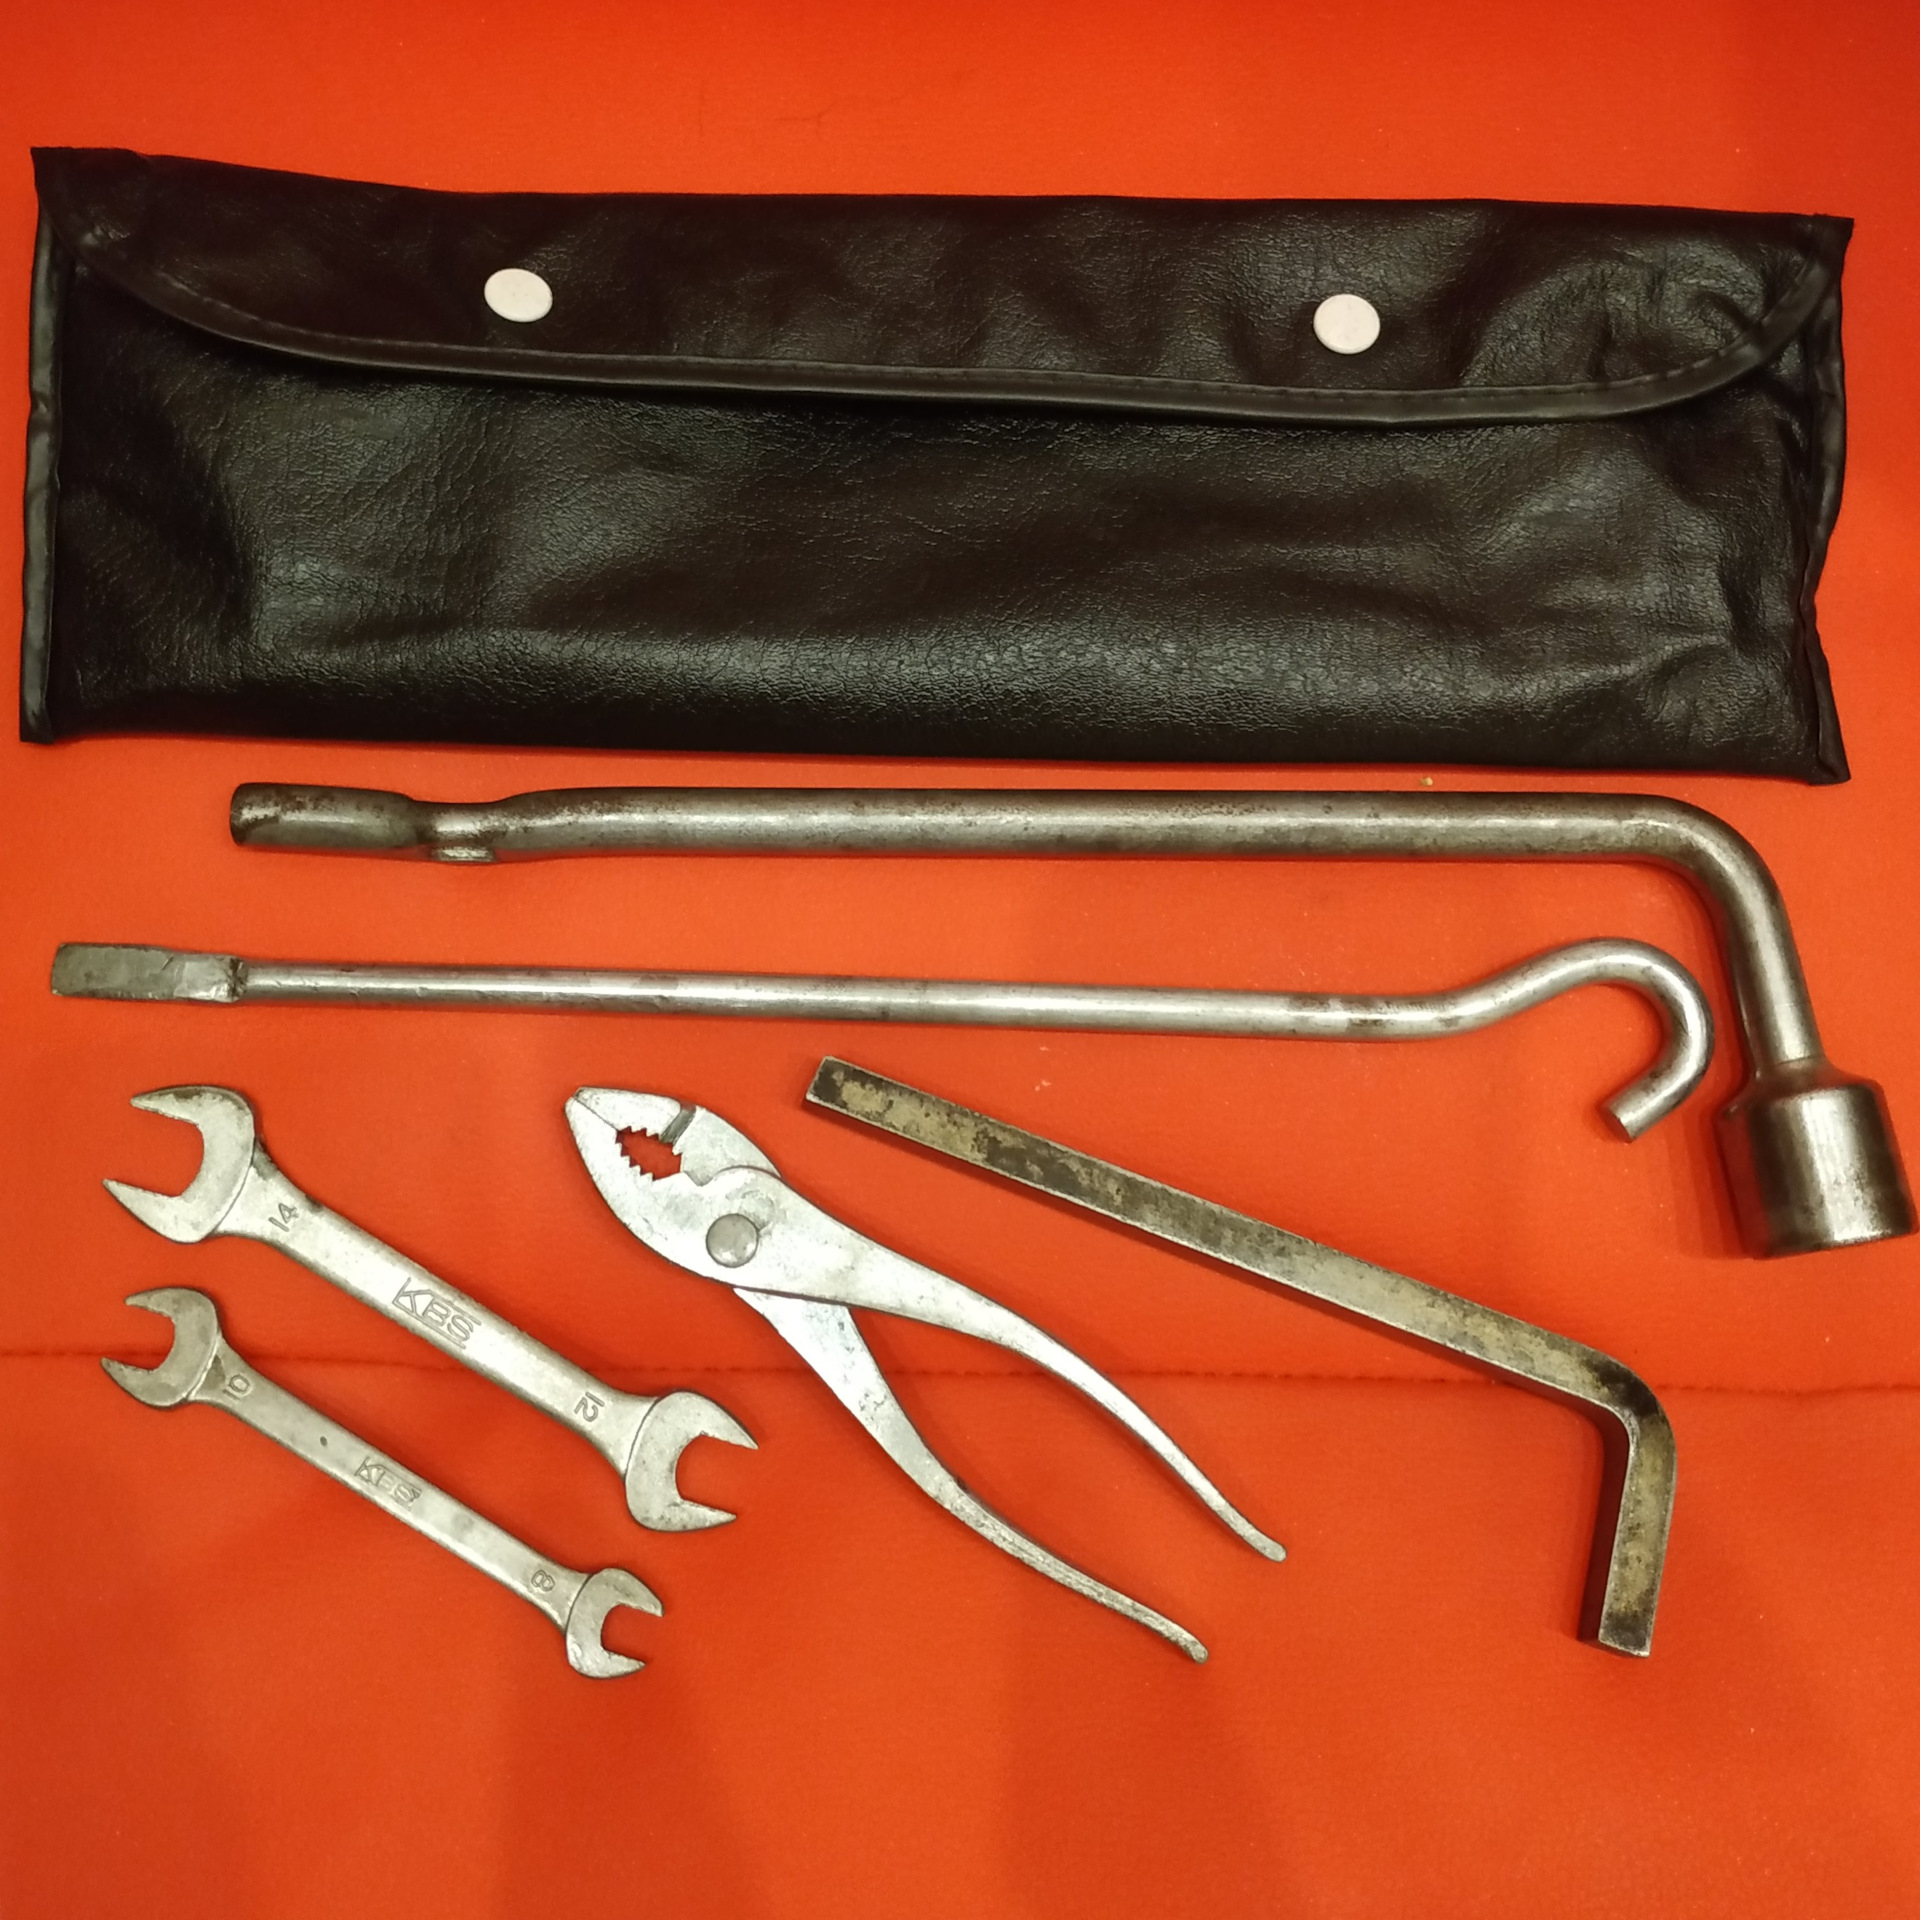 Nissan tools. Оригинальные инструменты. Инструмент Nissan ni-052011-Bush. Необычные инструмент с двумя ручками.